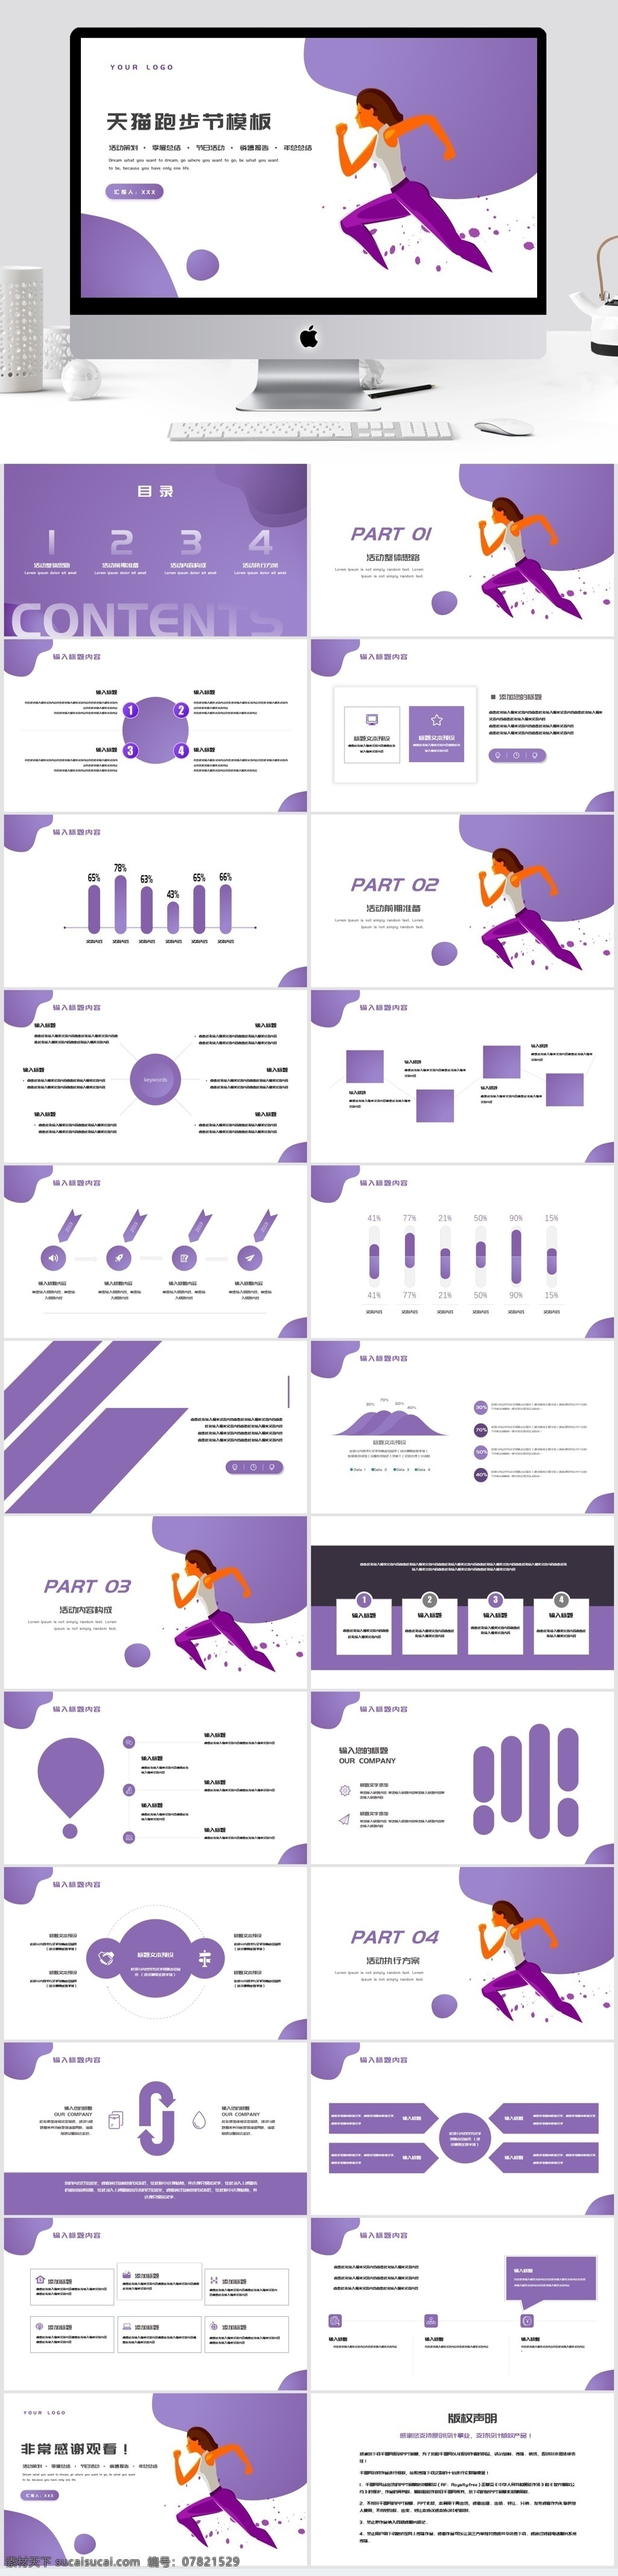 2019 紫色 天猫 跑步 节 活动策划 模板 金融 商务 ppt模板 简约 办公 通用 工作汇报 总结计划 汇报 工作 公司企业 项目 述职 商务模板 扁平化模板 创意模板 跑步节